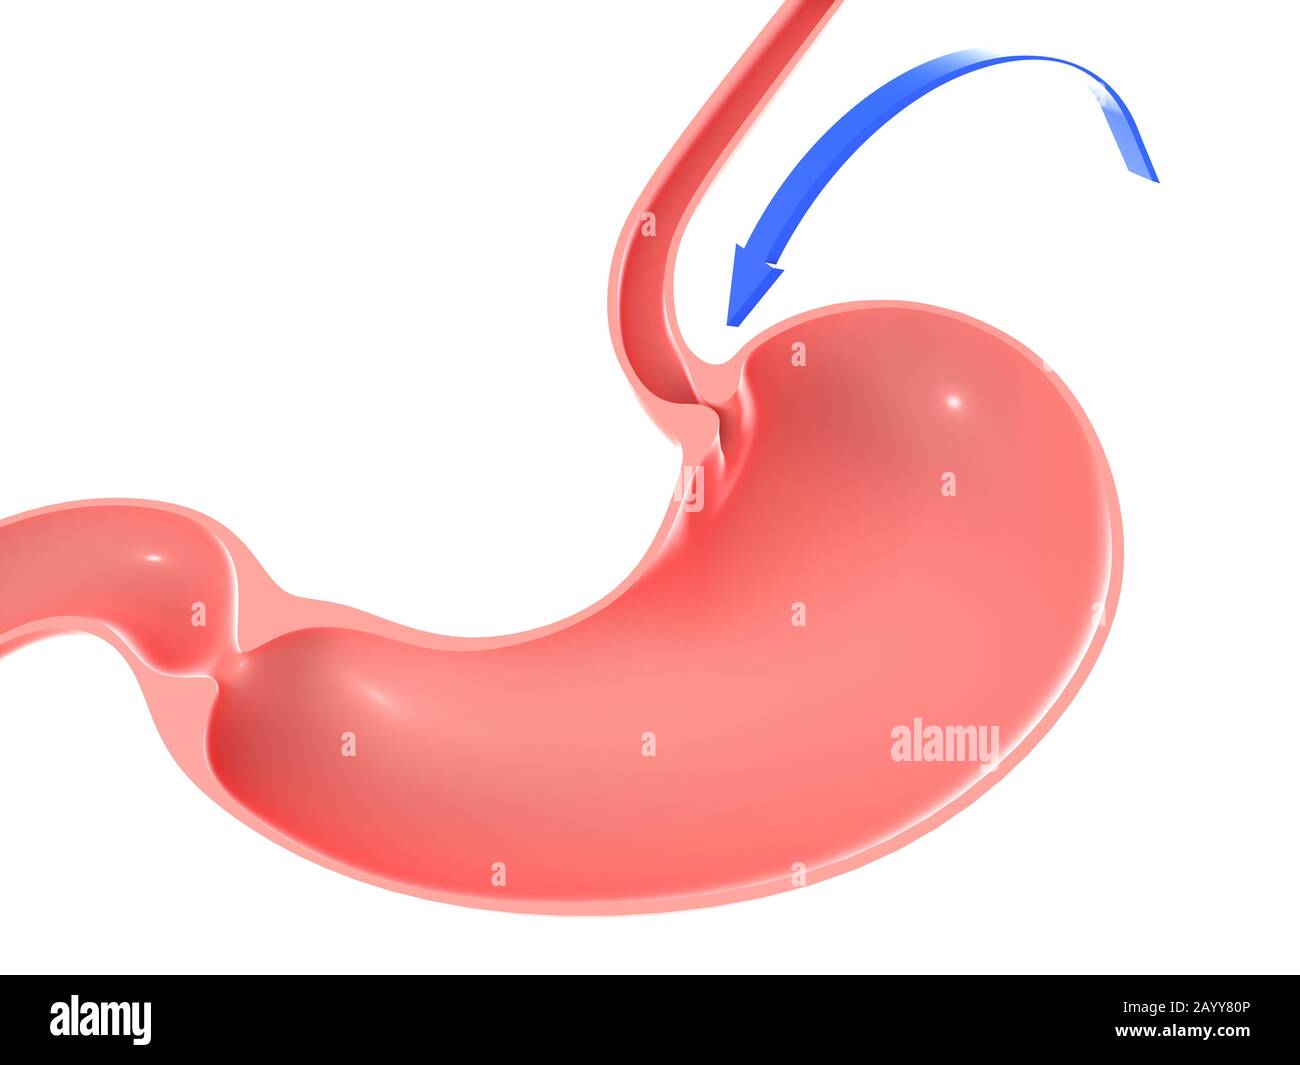 3D illustrazione dello stomaco umano, evidenziando lo sfintere duodenale e l'esofago. Con una freccia blu con il movimento rivolto verso. Foto Stock